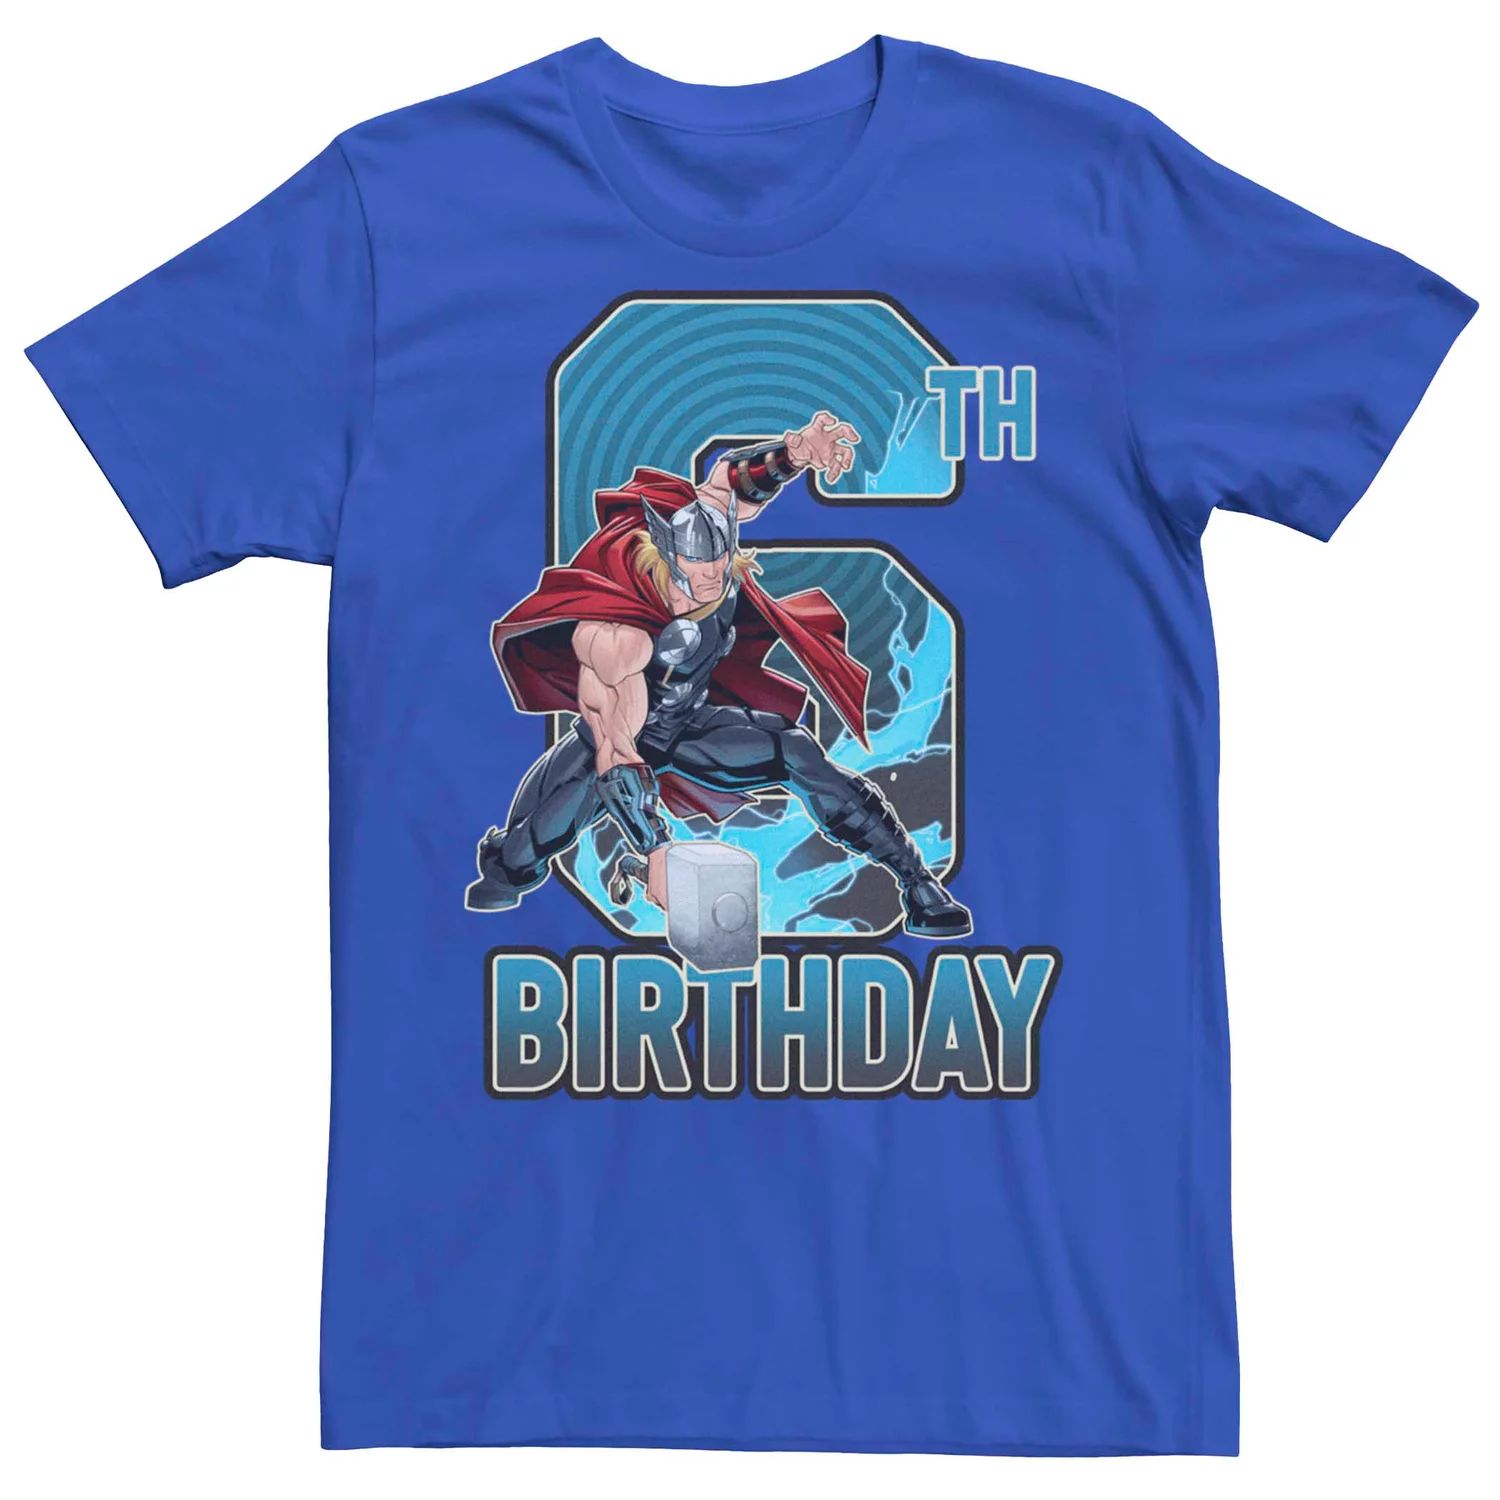 Мужская футболка Marvel's Thor на шестой день рождения Licensed Character мужская футболка день рождения белый контур m зеленый